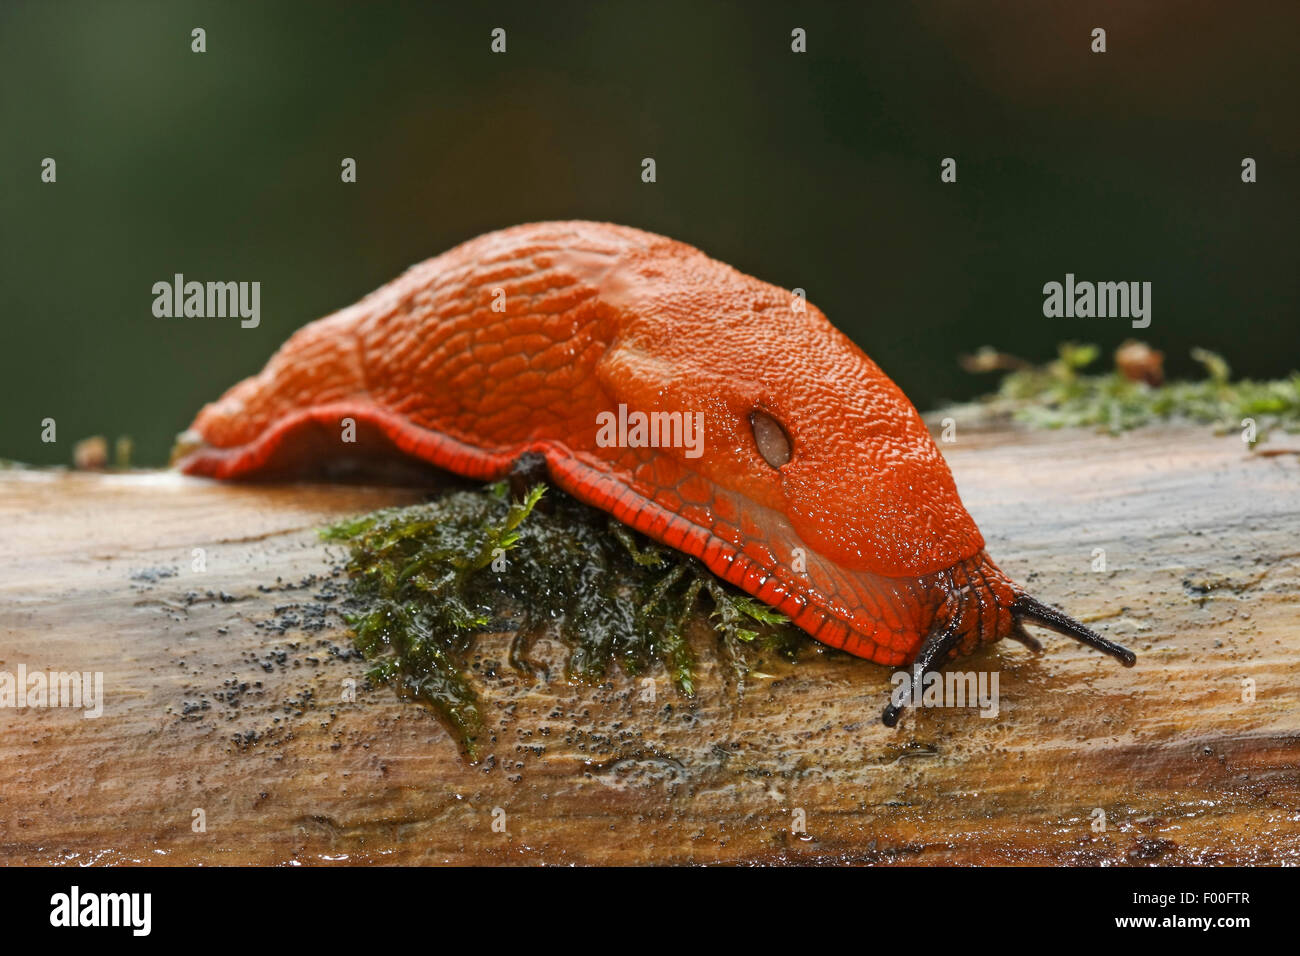 Grande Limace rouge, une plus grande limace rouge, Chocolat (Arion Arion rufus, Arion ater, Arion ater ssp. rufus), sur une branche, Allemagne Banque D'Images